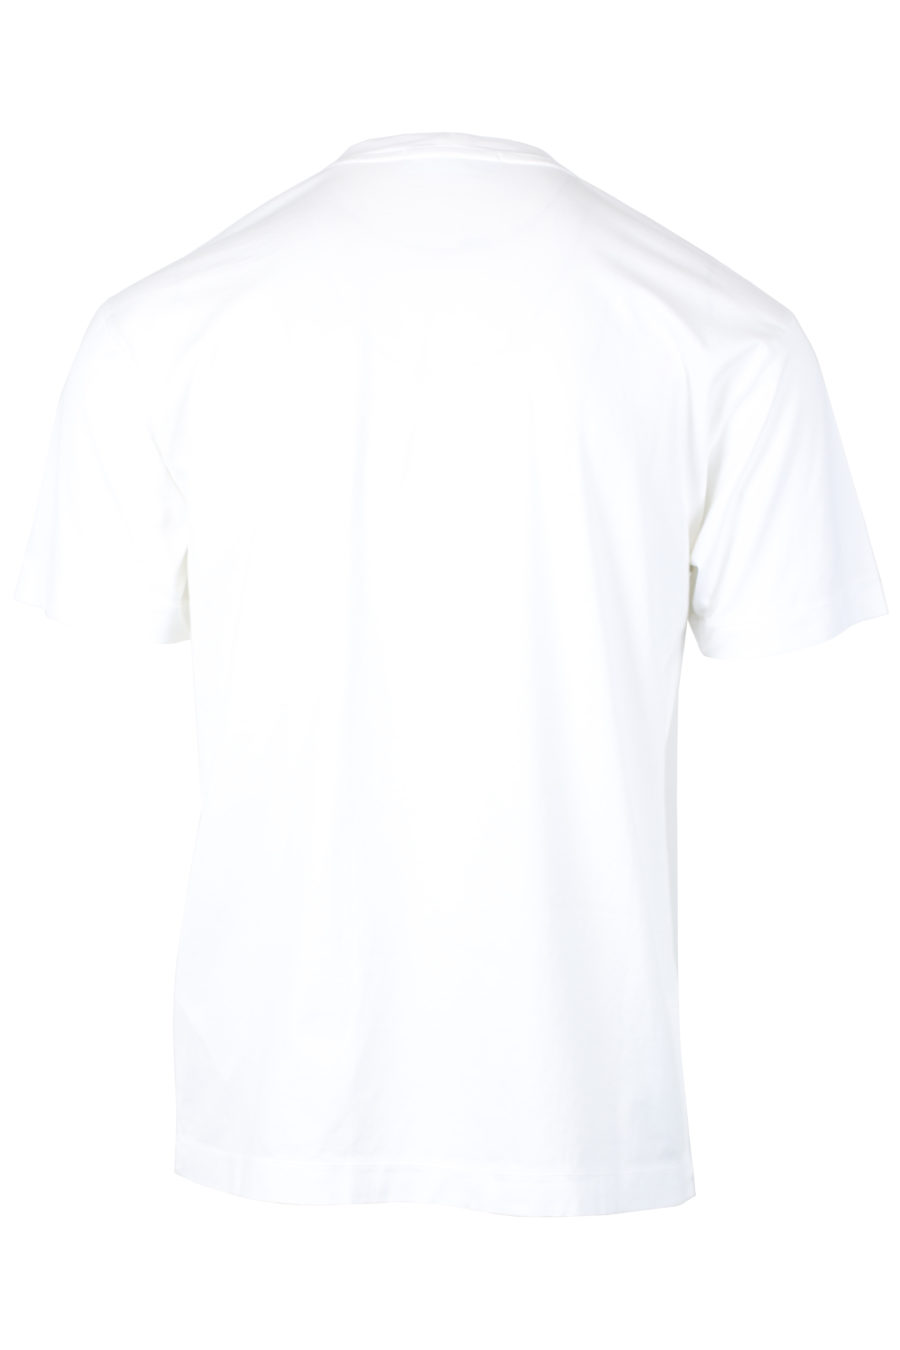 T-shirt blanc avec écusson - IMG 2493